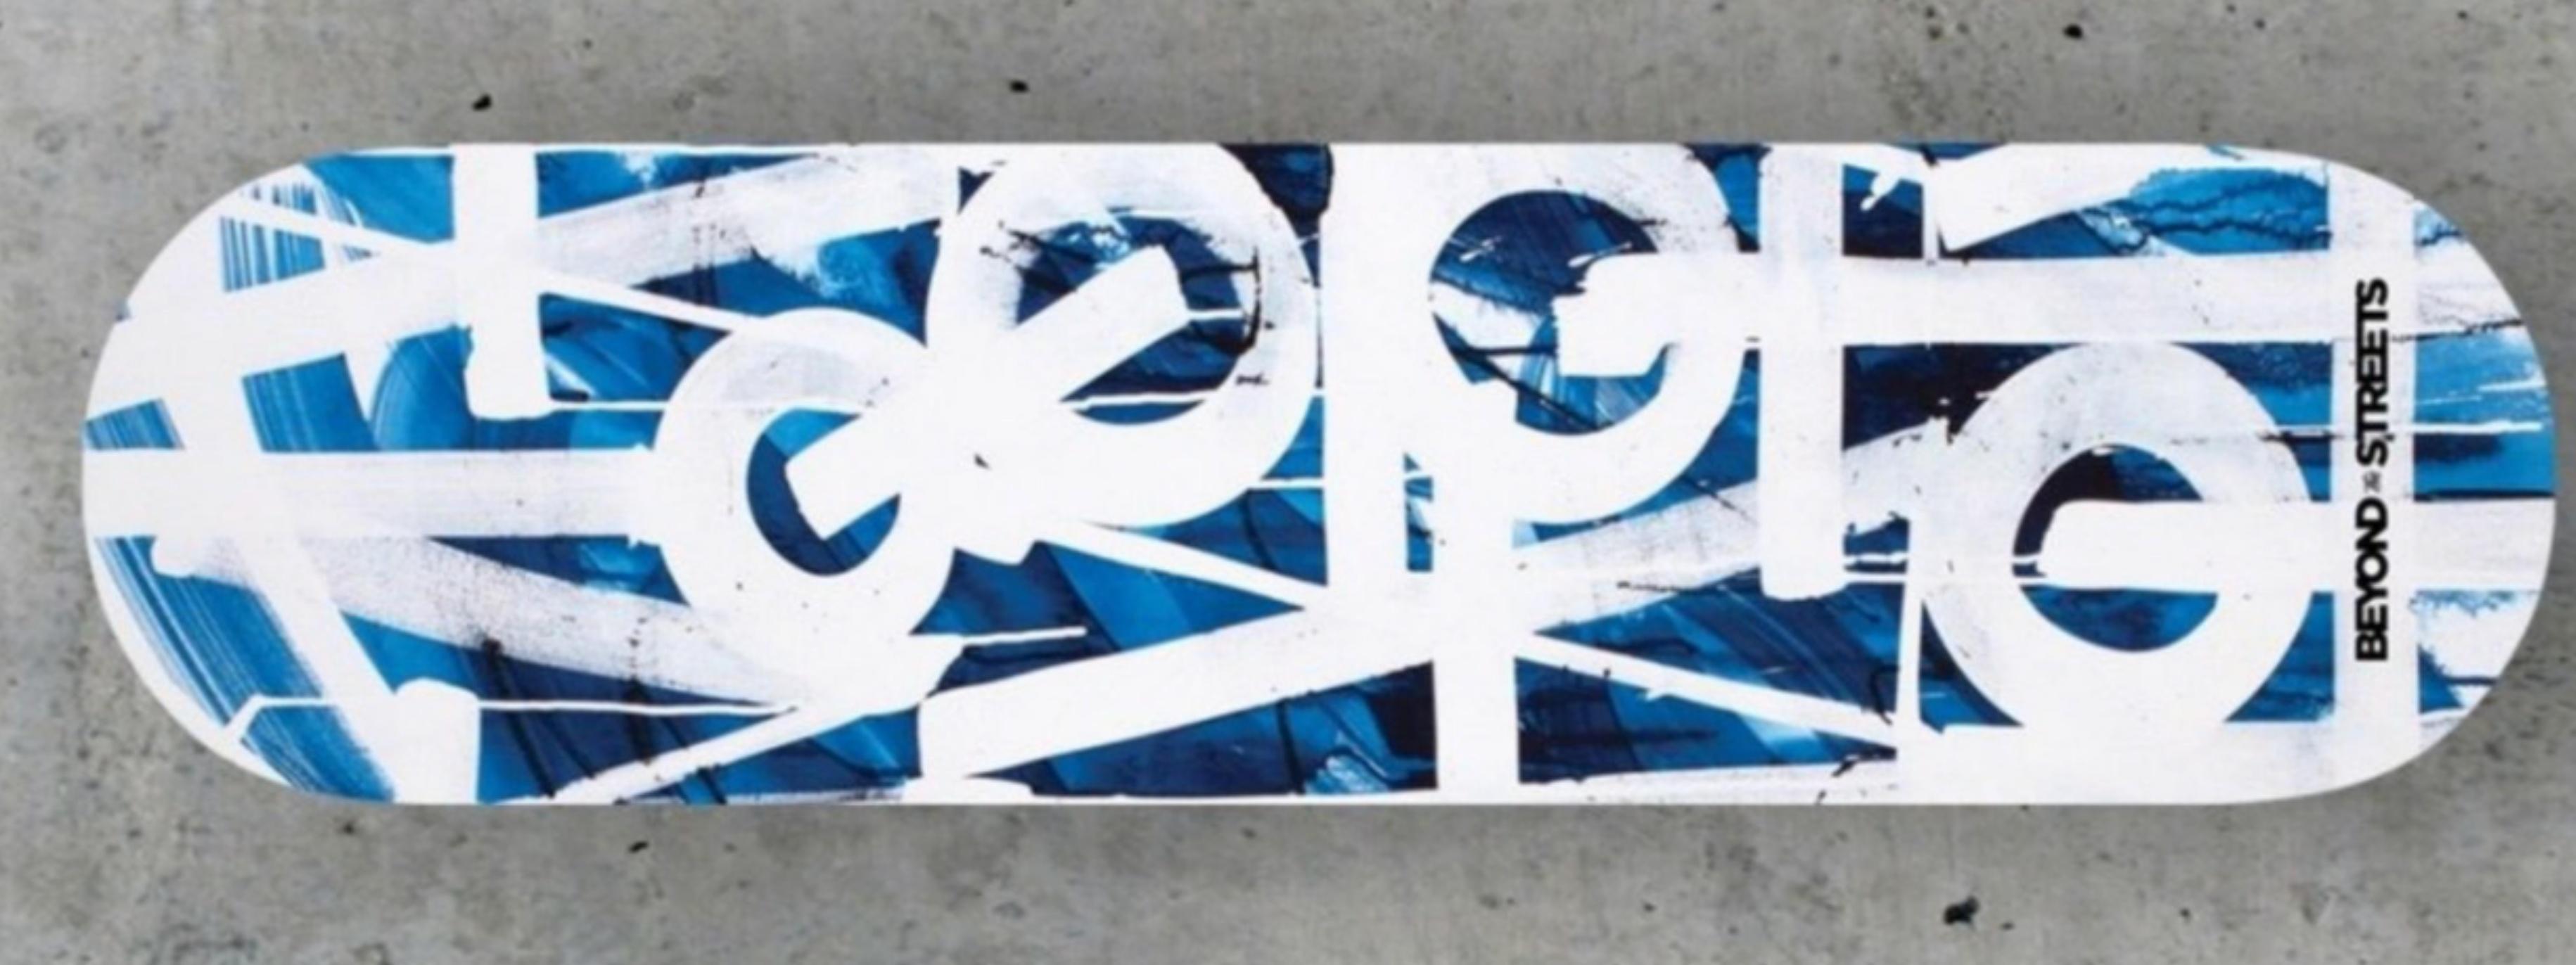 RETNA
Skateboard Skate Deck (Blau mit Holzrücken) mit COA handsigniert von RETNA, 2018
Siebdruck auf Maplewood-Skate-Deck. Begleitet von einem handsignierten Echtheitszertifikat auf geprägtem Briefpapier.
Limitierte Auflage von 100 Stück 
Separates,